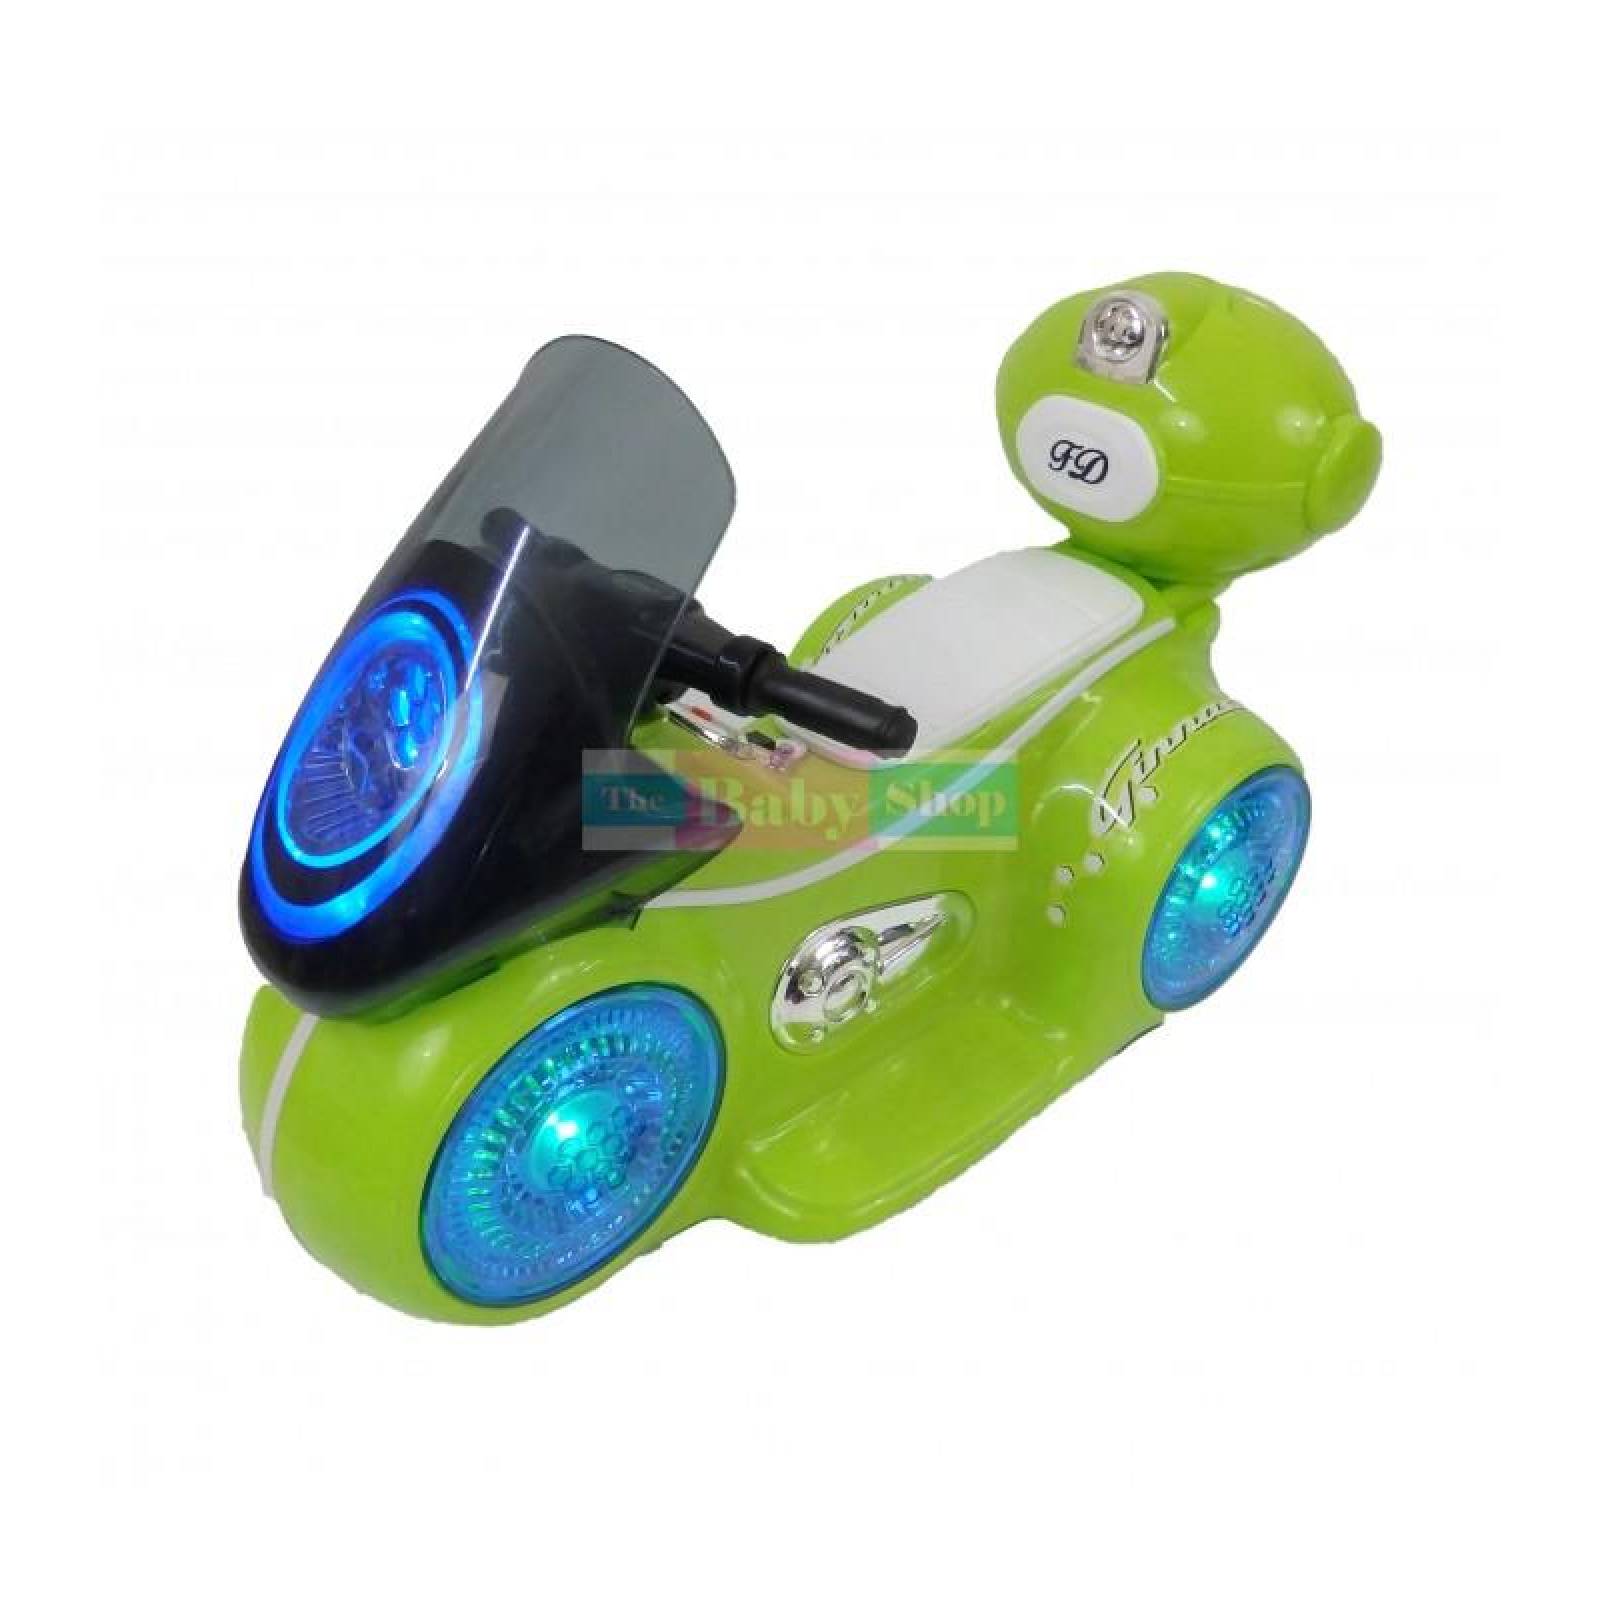 Motocicleta deportiva eléctrica con sonido y led para niños Verde